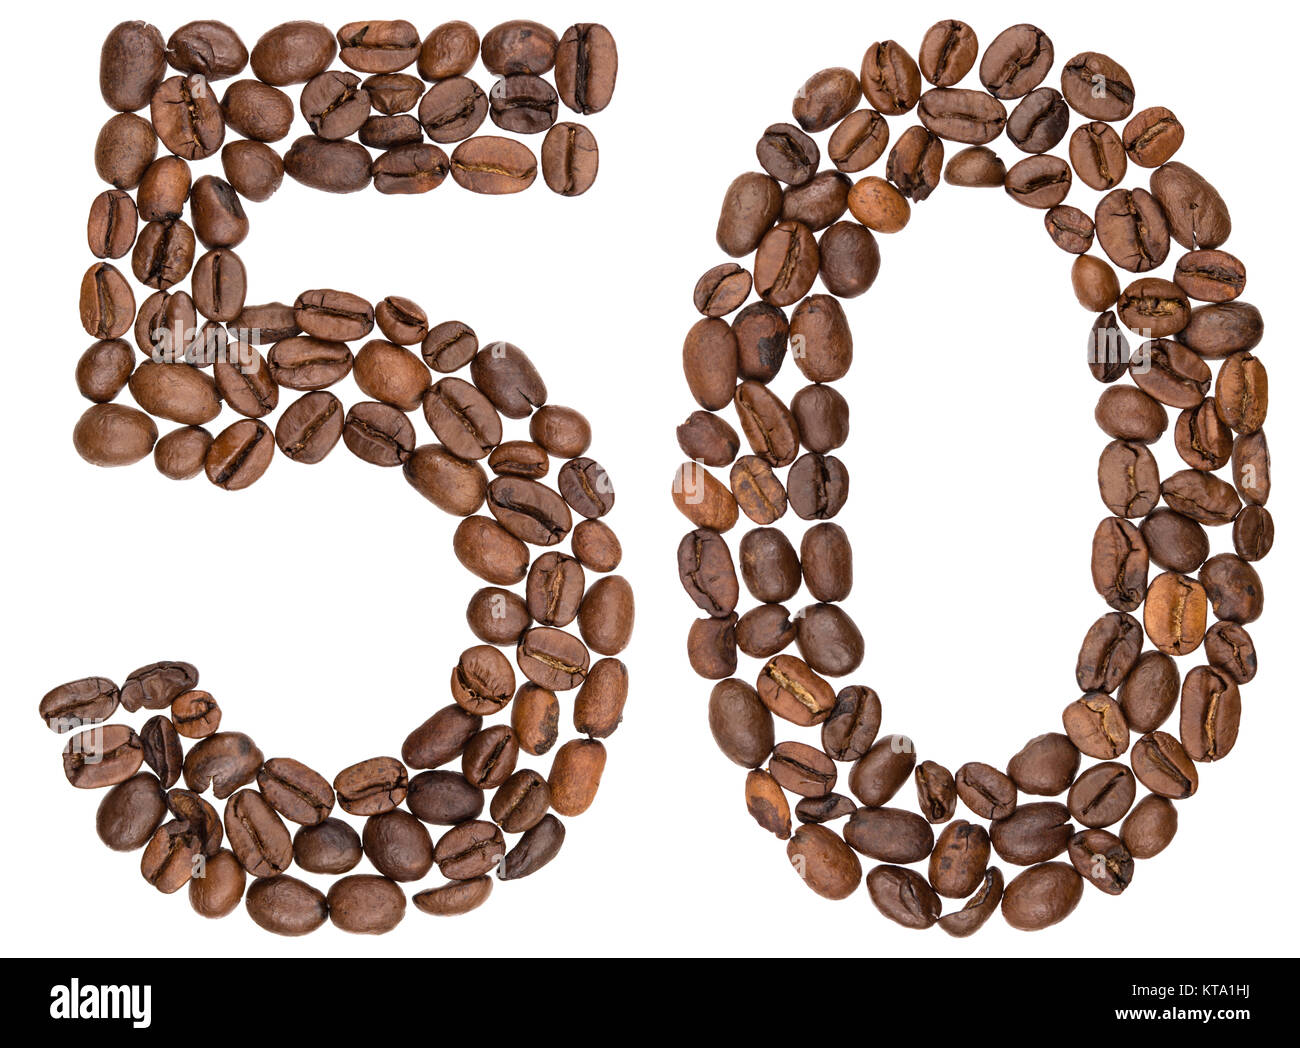 Numero arabo 50, cinquanta, dal caffè in grani, isolato su sfondo bianco Foto Stock